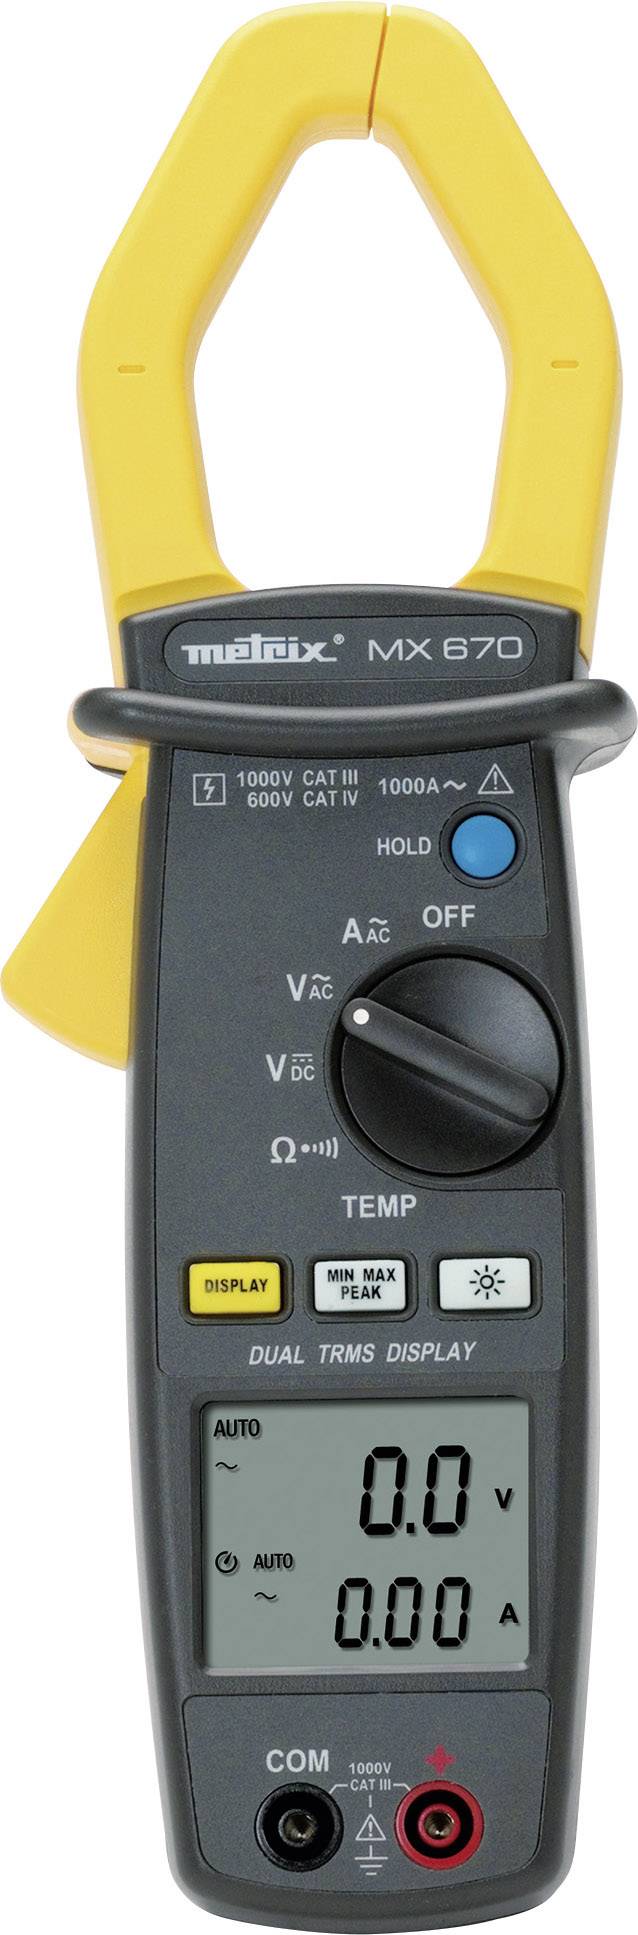 CHAUVIN ARNOUX Stromzange, Hand-Multimeter Metrix MX 670 Kalibriert nach: Werksstandard CAT III 1000